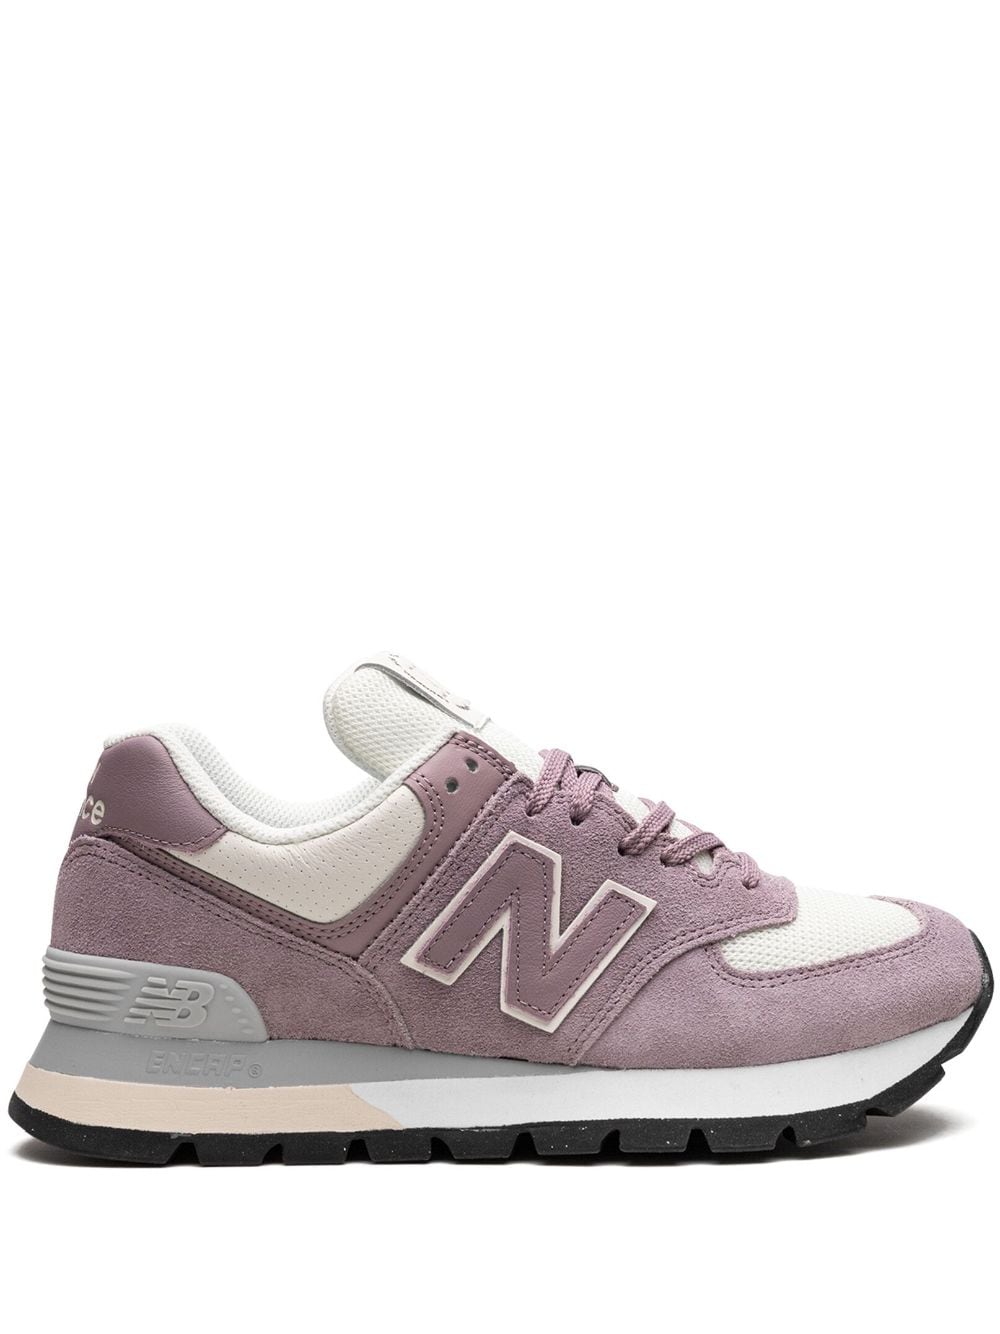 New Balance 574 Sneakers - Violett von New Balance